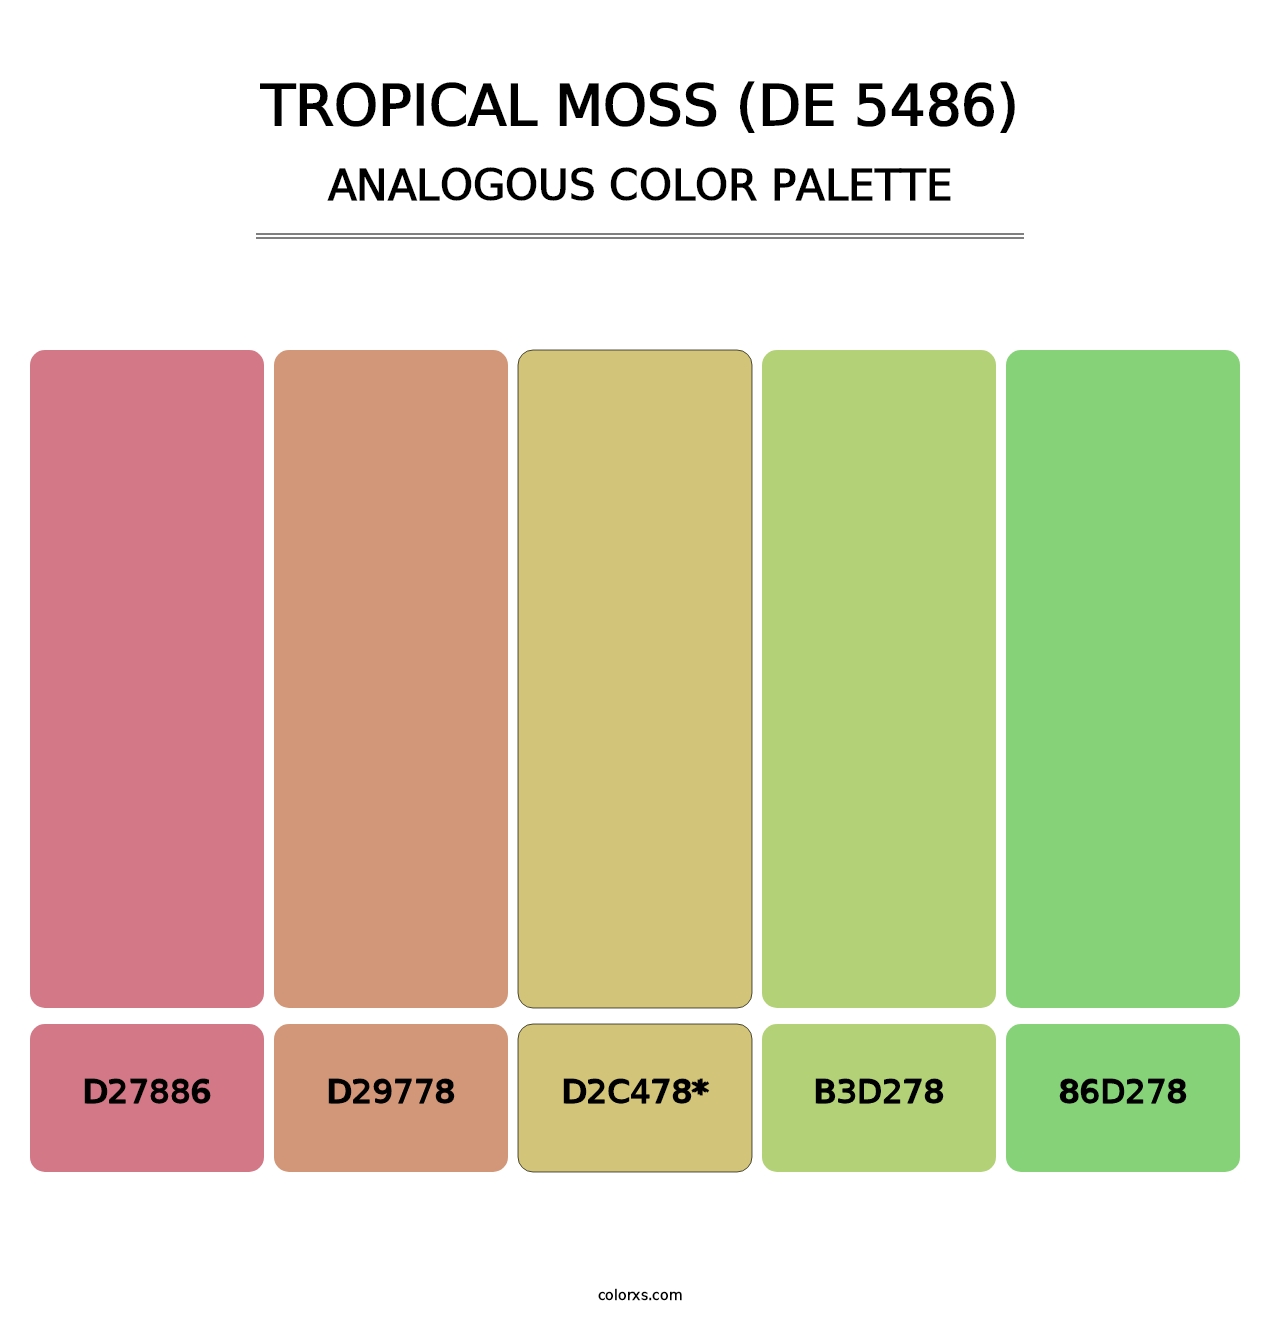 Tropical Moss (DE 5486) - Analogous Color Palette